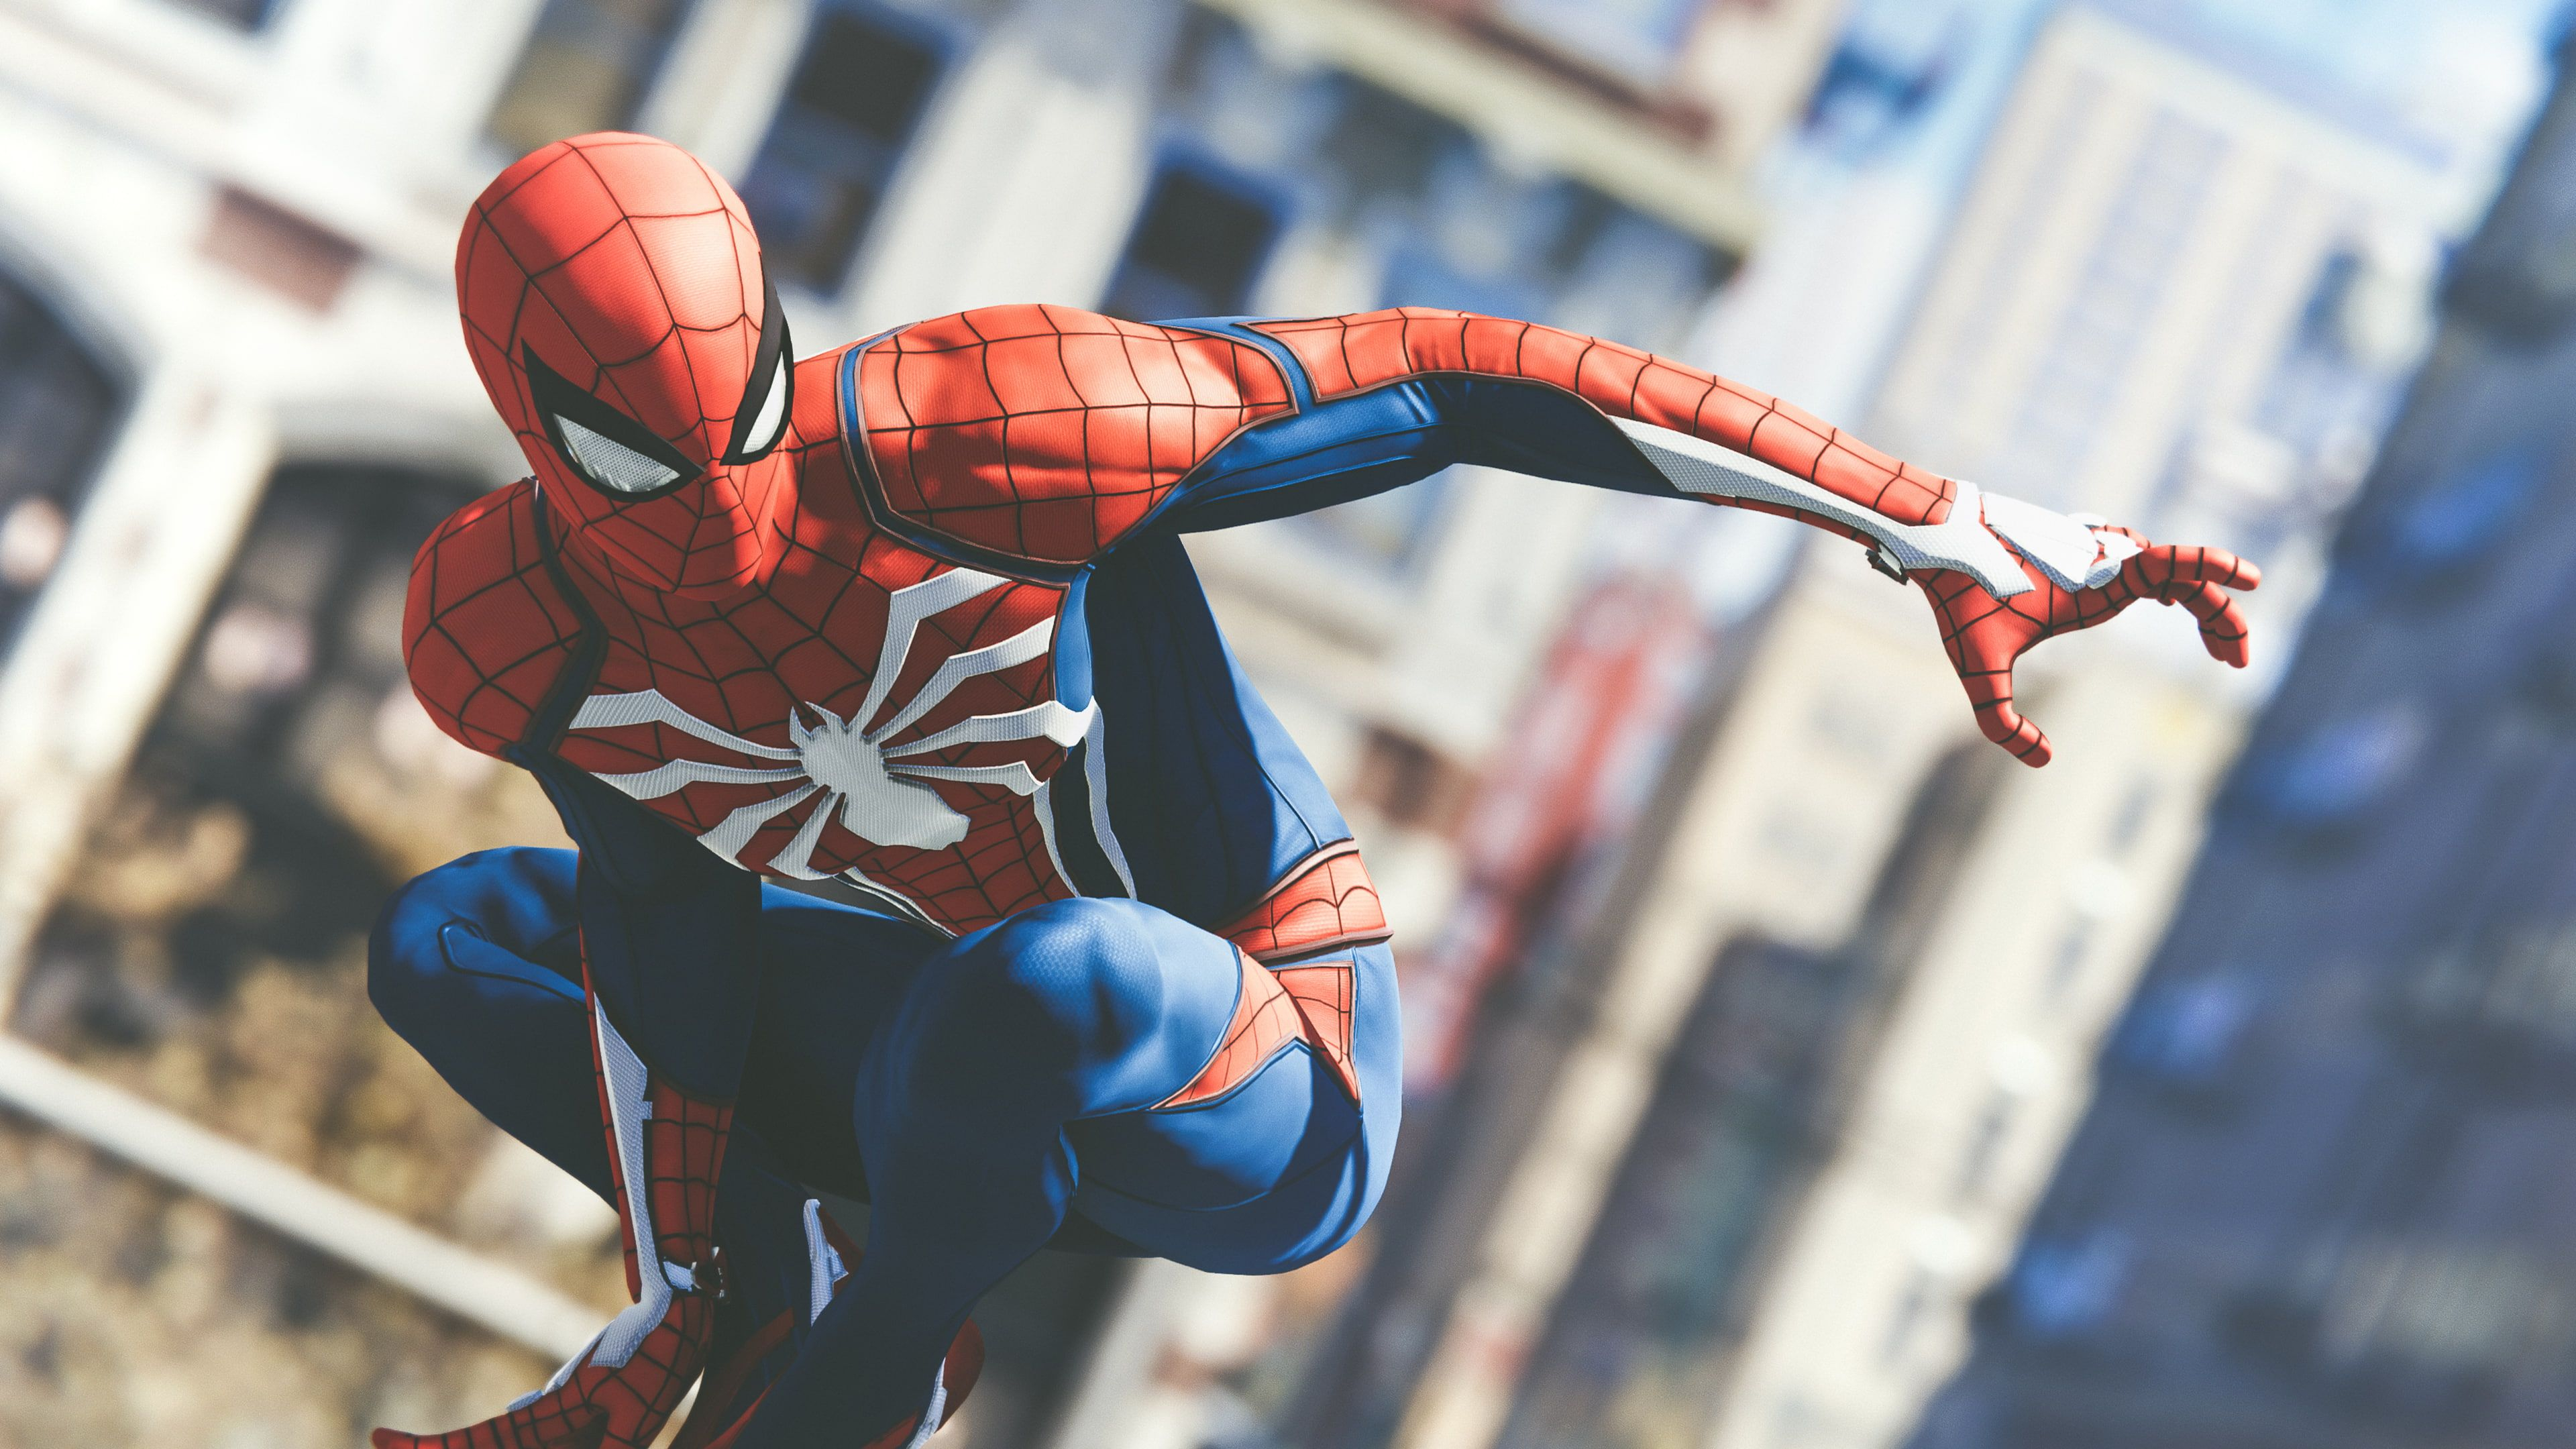 3840x2160 Spider-Man PS4 Pro 4K #spider-man #Pro #PS4 #4K #wallpaper #hdwallpaper #desktop | Spiderman, Marvel spiderman, Spider-man wallpaper